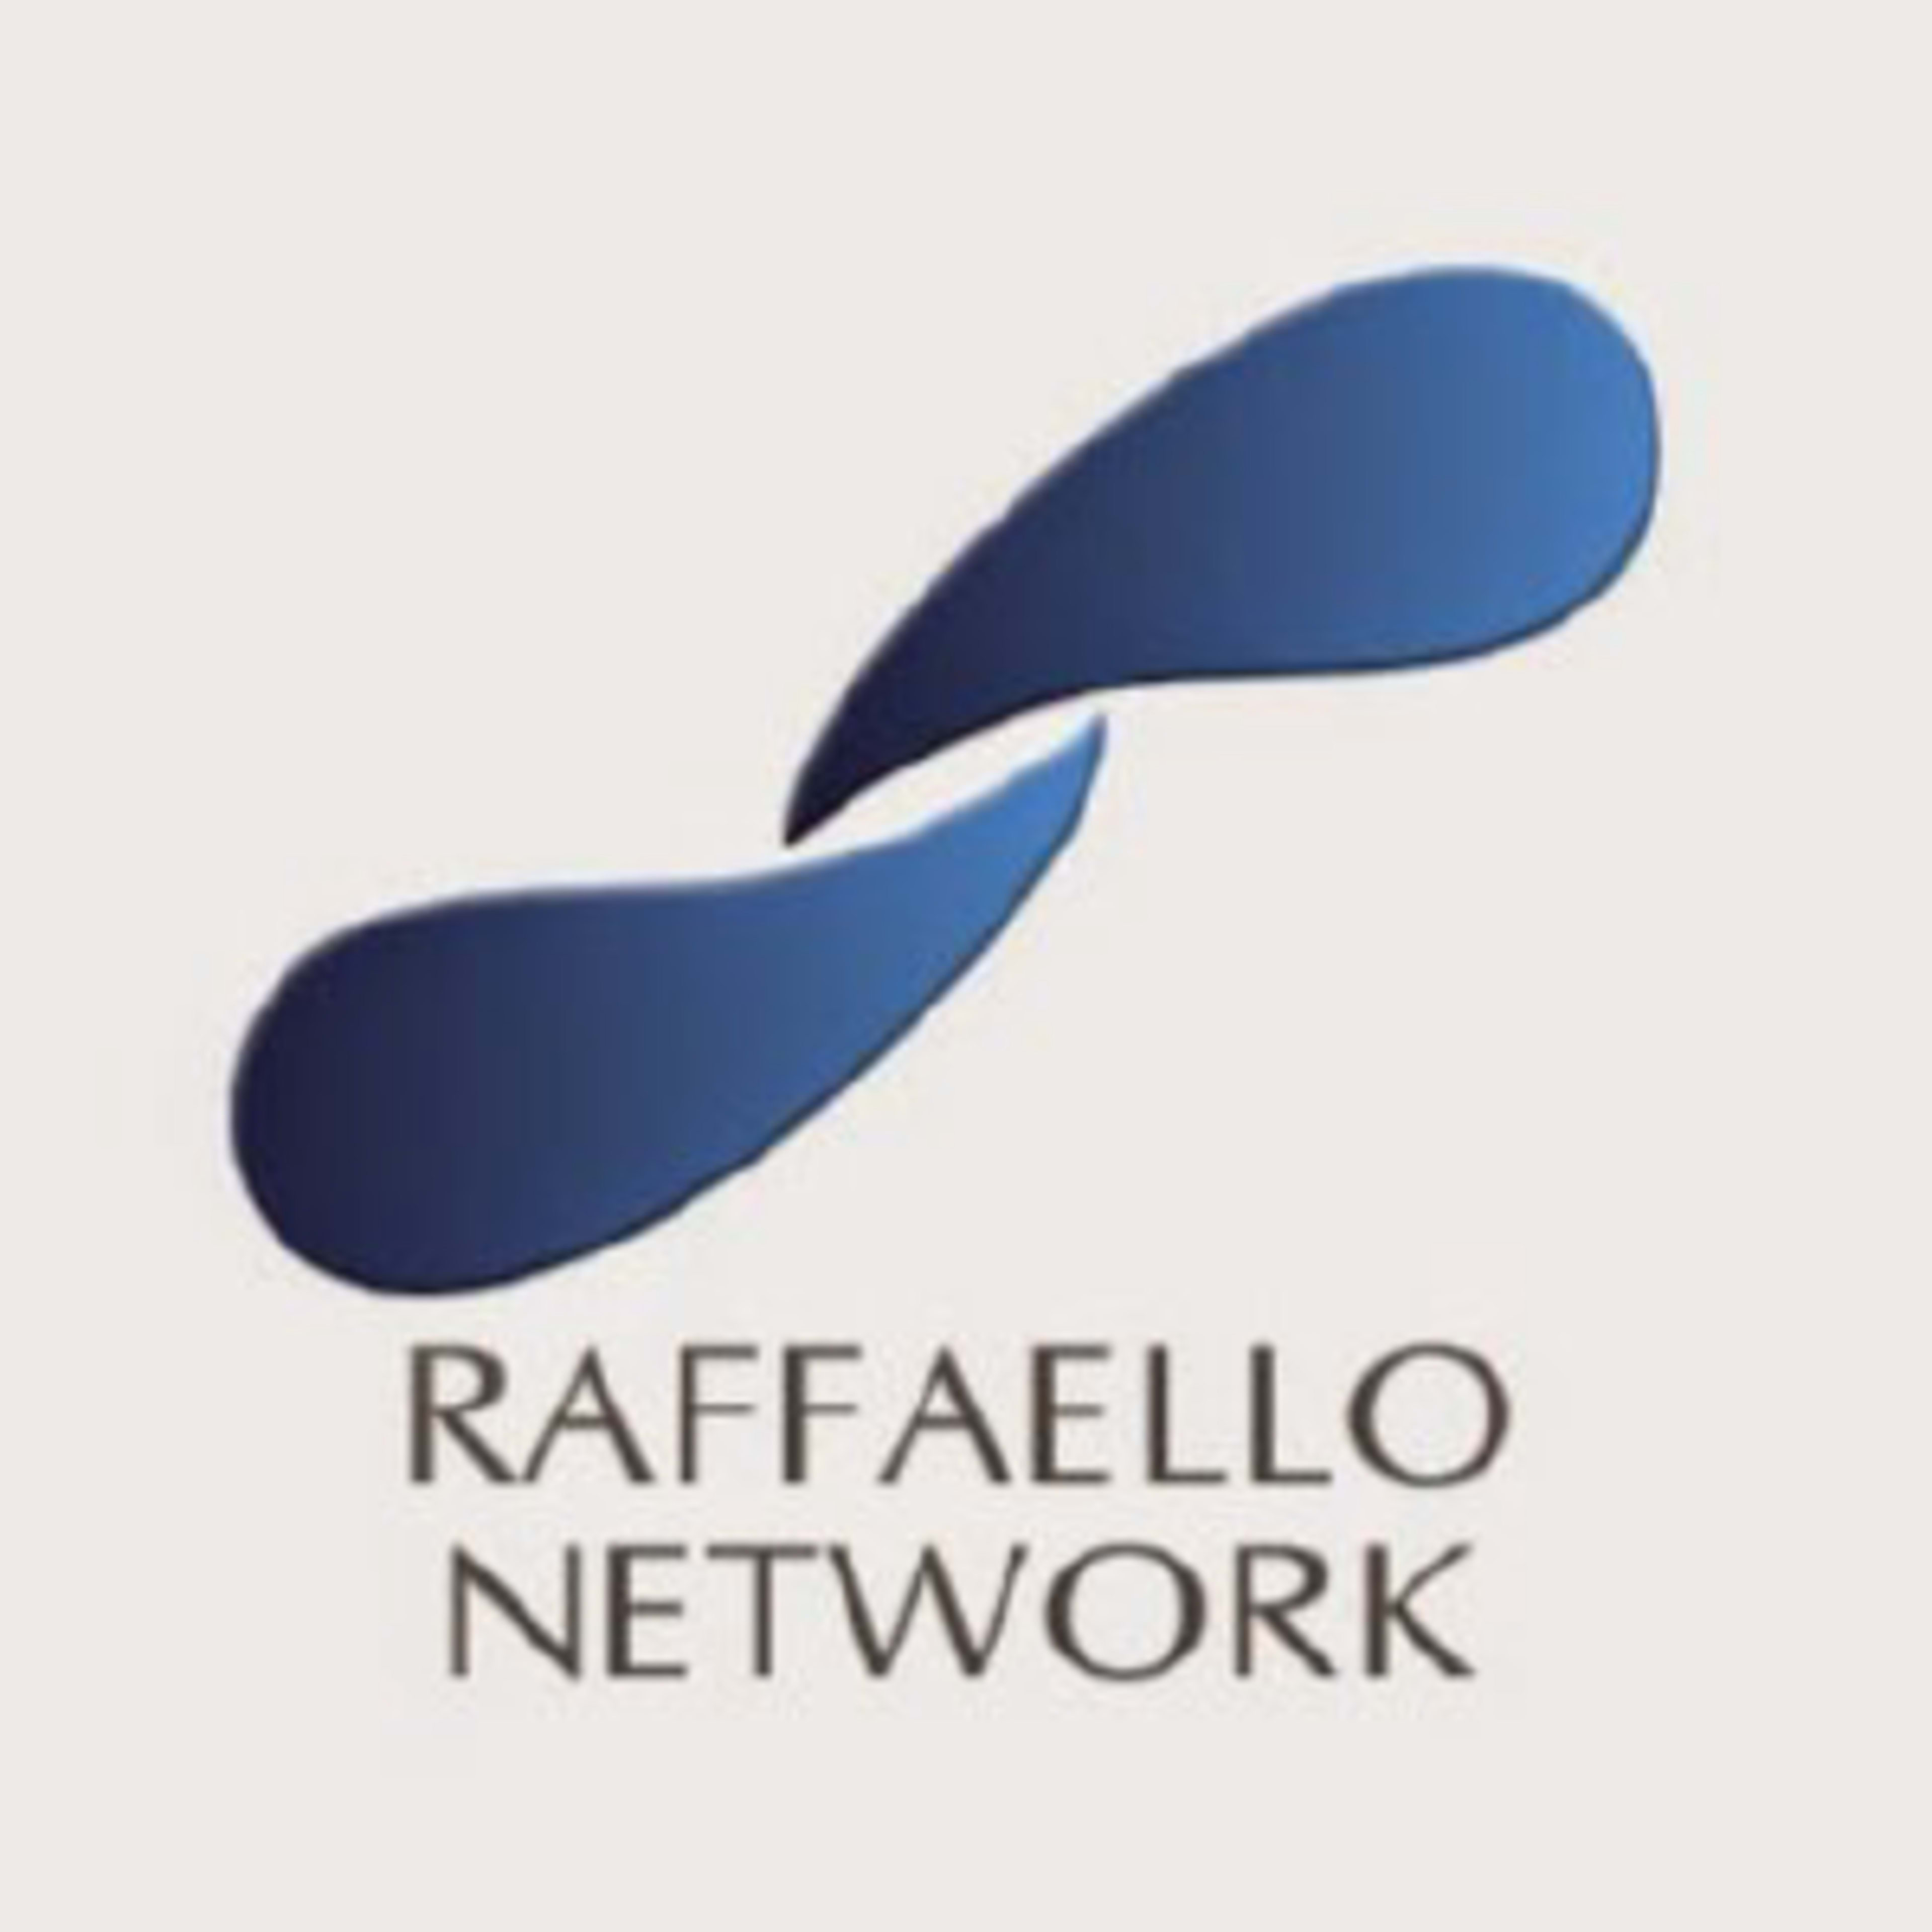 Raffaello Network Code